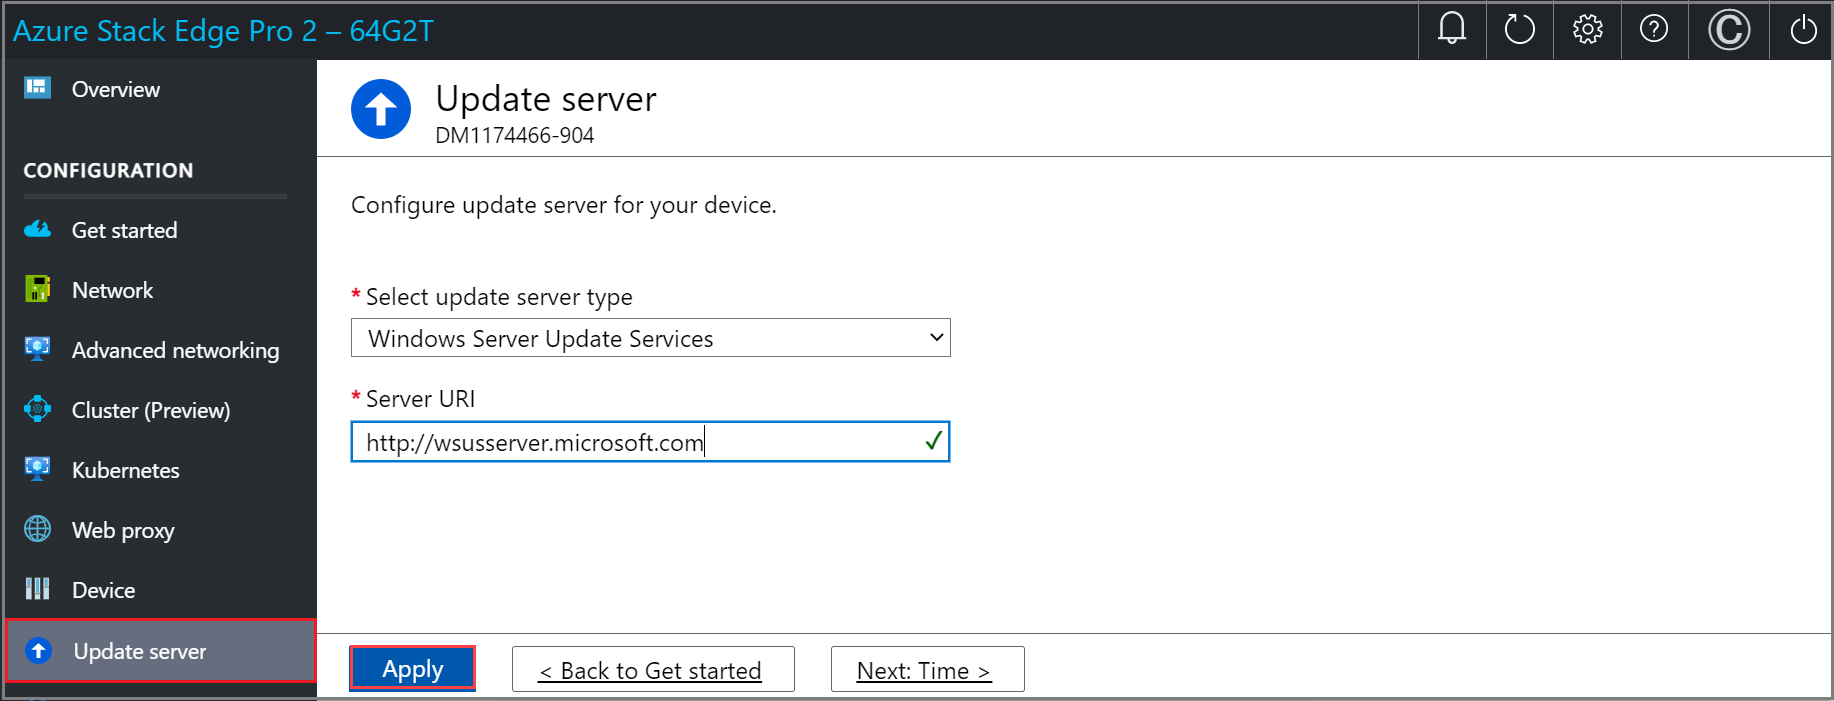 Azure Stack Edge 设备本地 Web UI 中已配置 Windows Server 更新服务的“更新服务器”页面屏幕截图。突出显示了“应用”按钮。